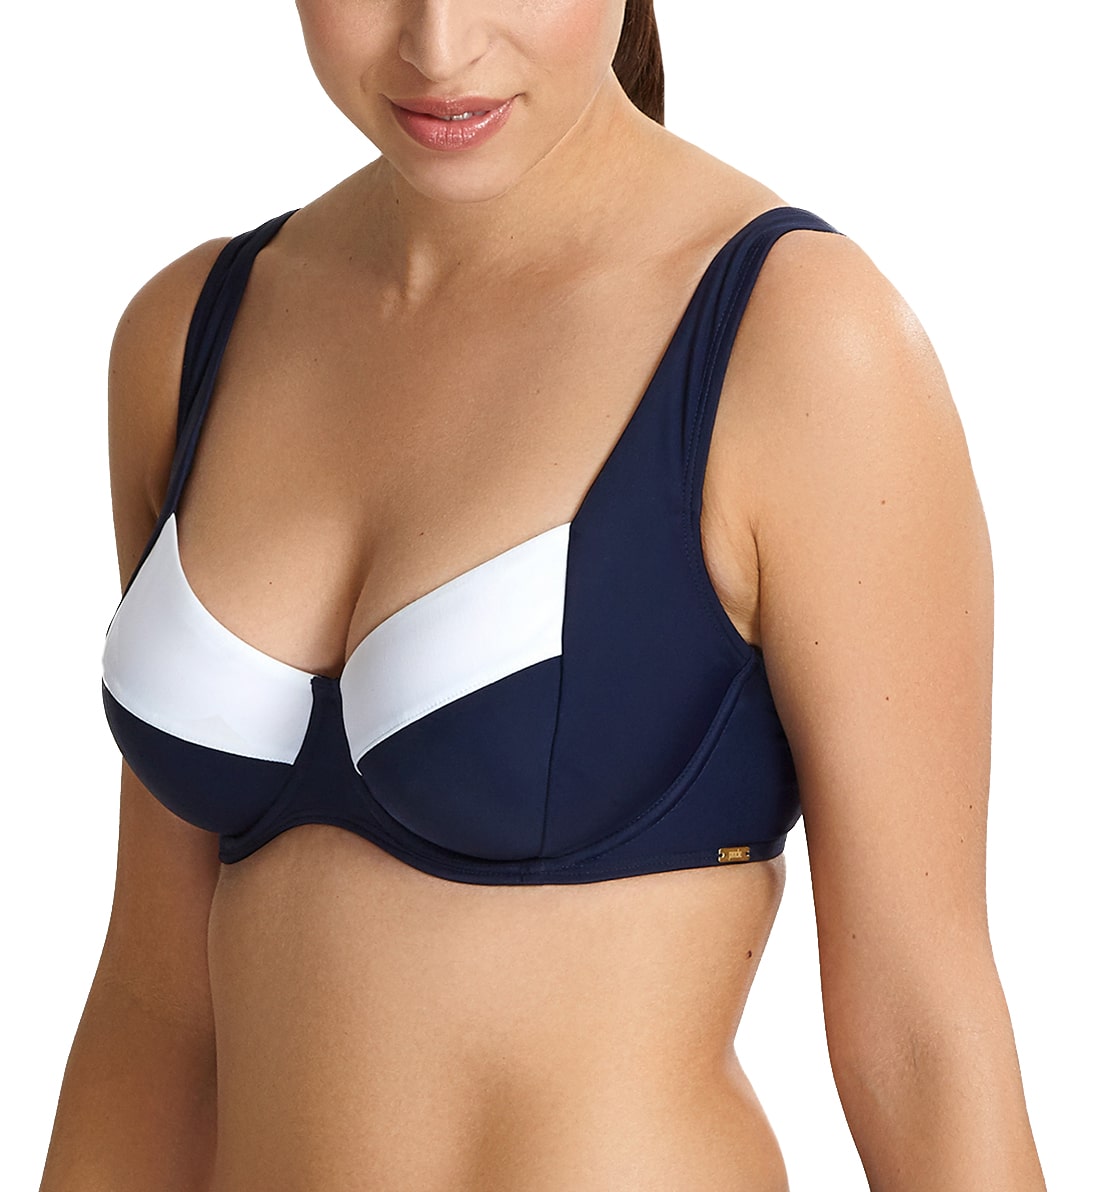 Panache Catarina Balconnet Side Support Underwire Bikini (SW1352),30E,Midnight/White - Midnight/White,30E